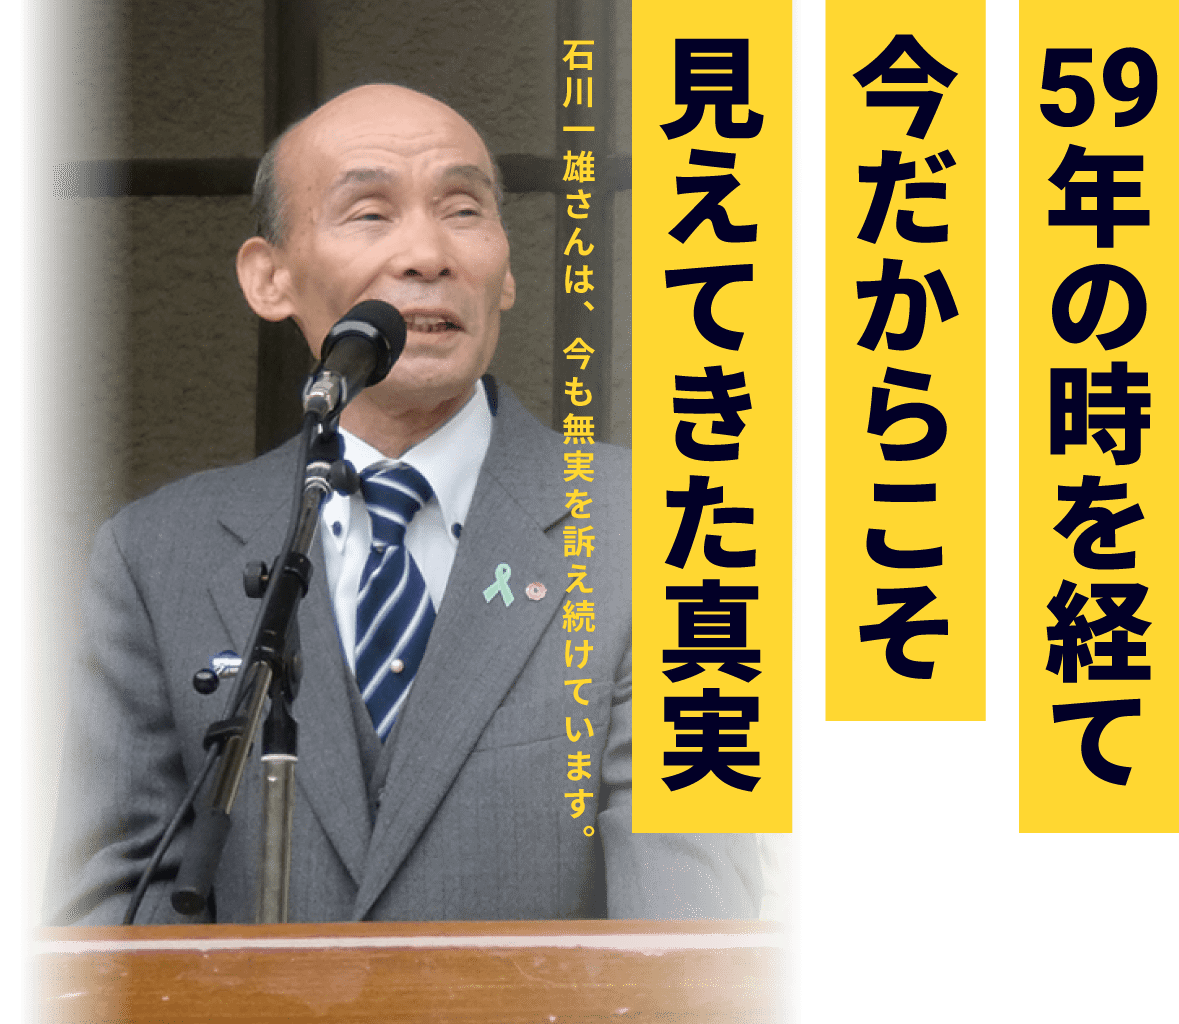 59年の時を経て今だからこそ見えてきた真実 石川一雄さんは、今も無実を訴え続けています。